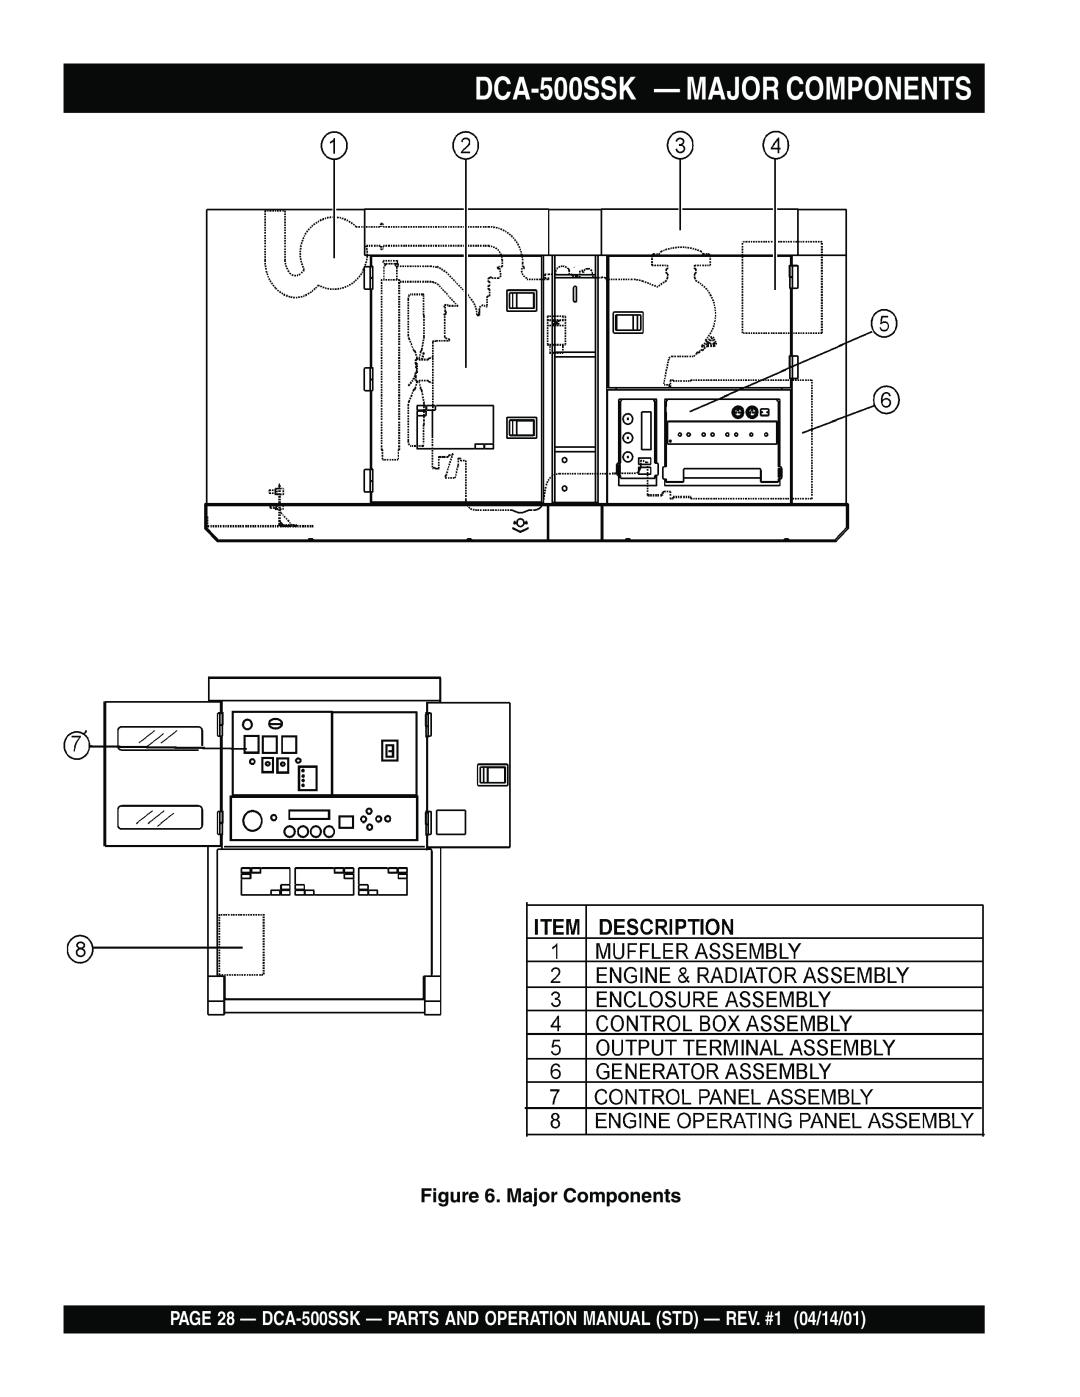 Multiquip operation manual DCA-500SSK - MAJOR COMPONENTS, Major Components 